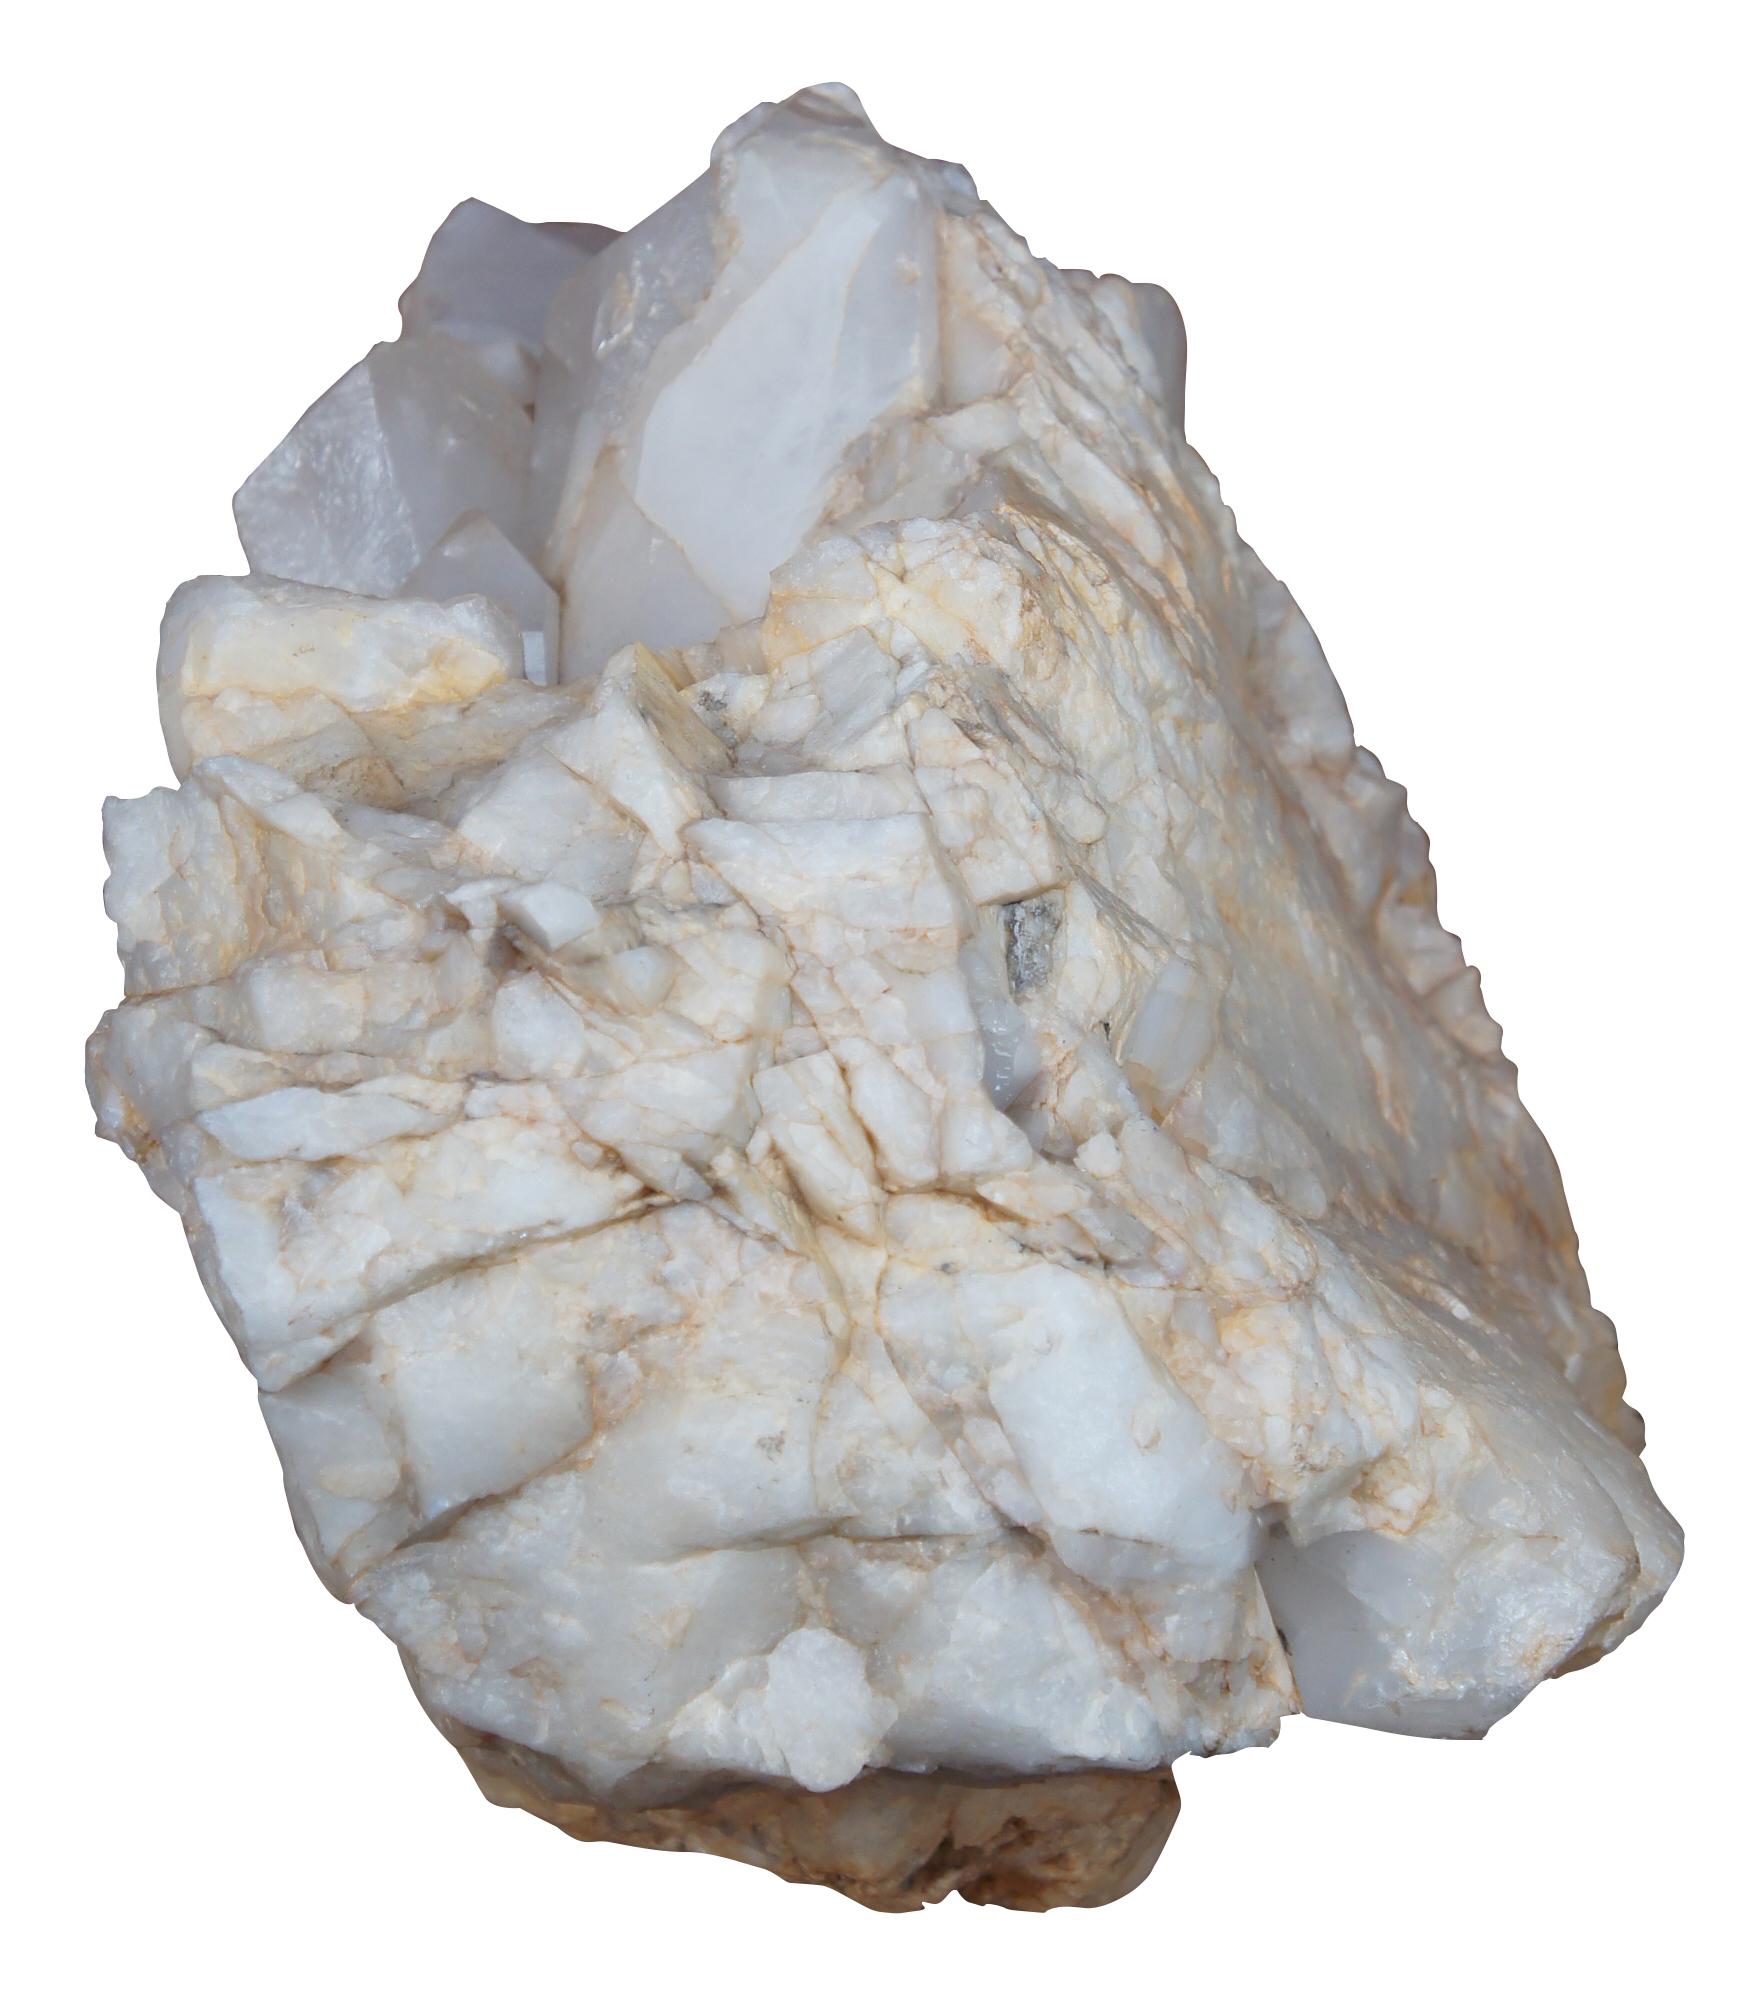 Un beau et impressionnant spécimen de quartz blanc naturel de 90 livres. Magnifique sculpture naturelle ajoutant un élément organique moderne à n'importe quelle pièce.

Ce cristal blanc est considéré comme un 